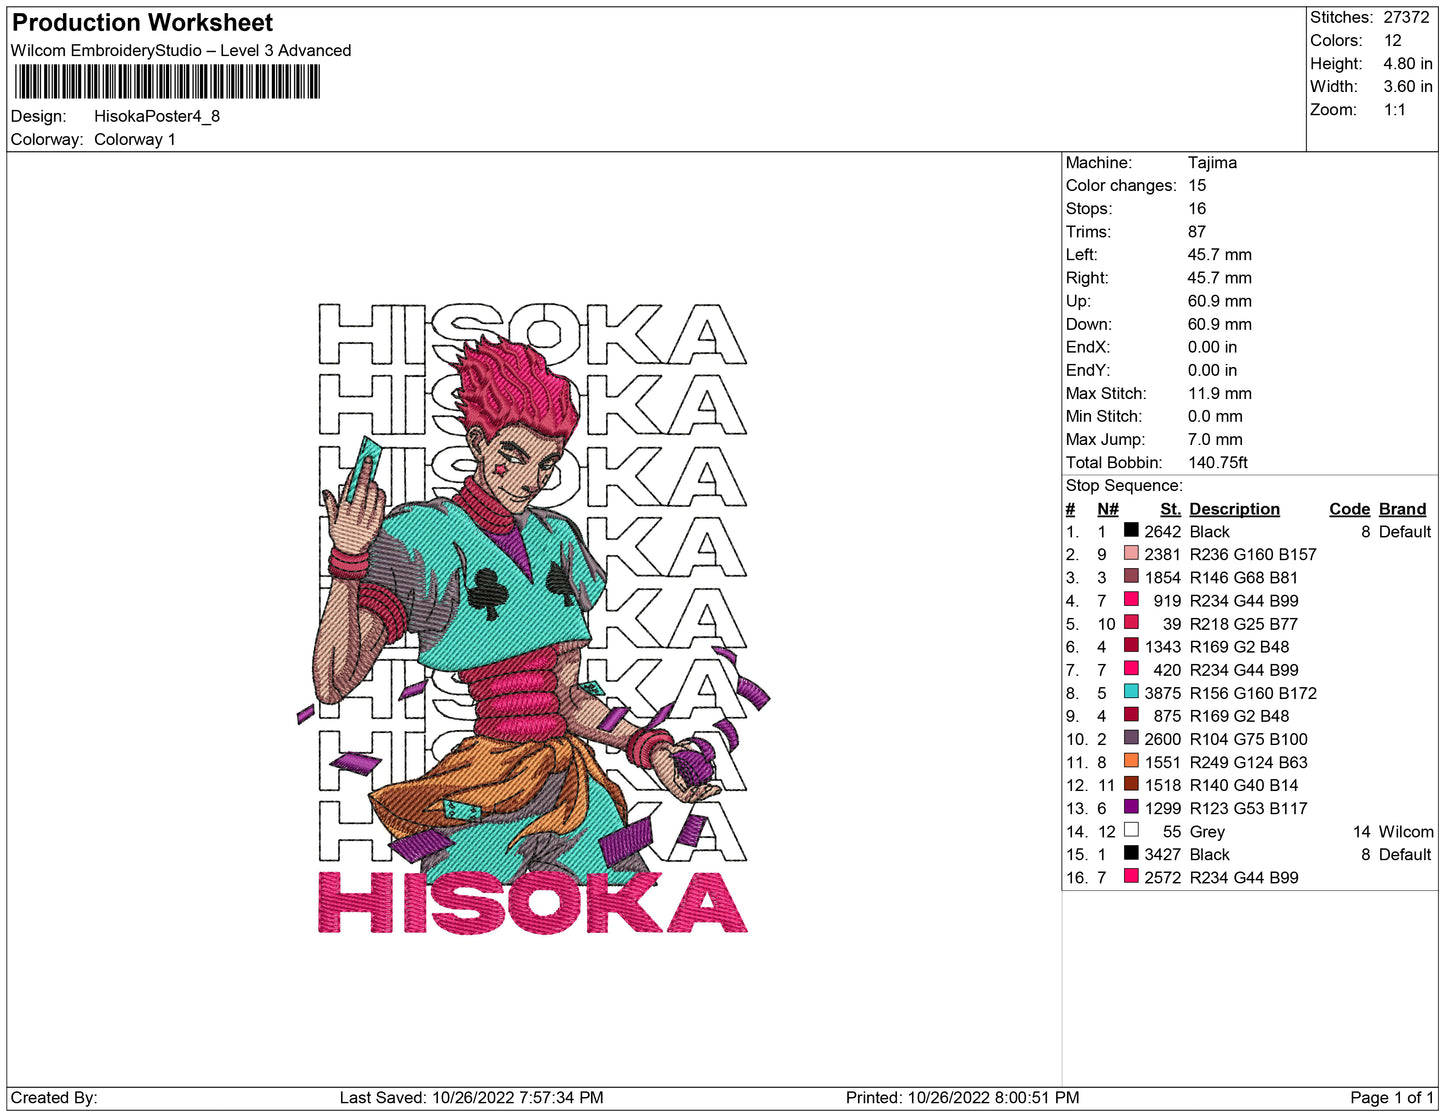 Hisoka-Plakat